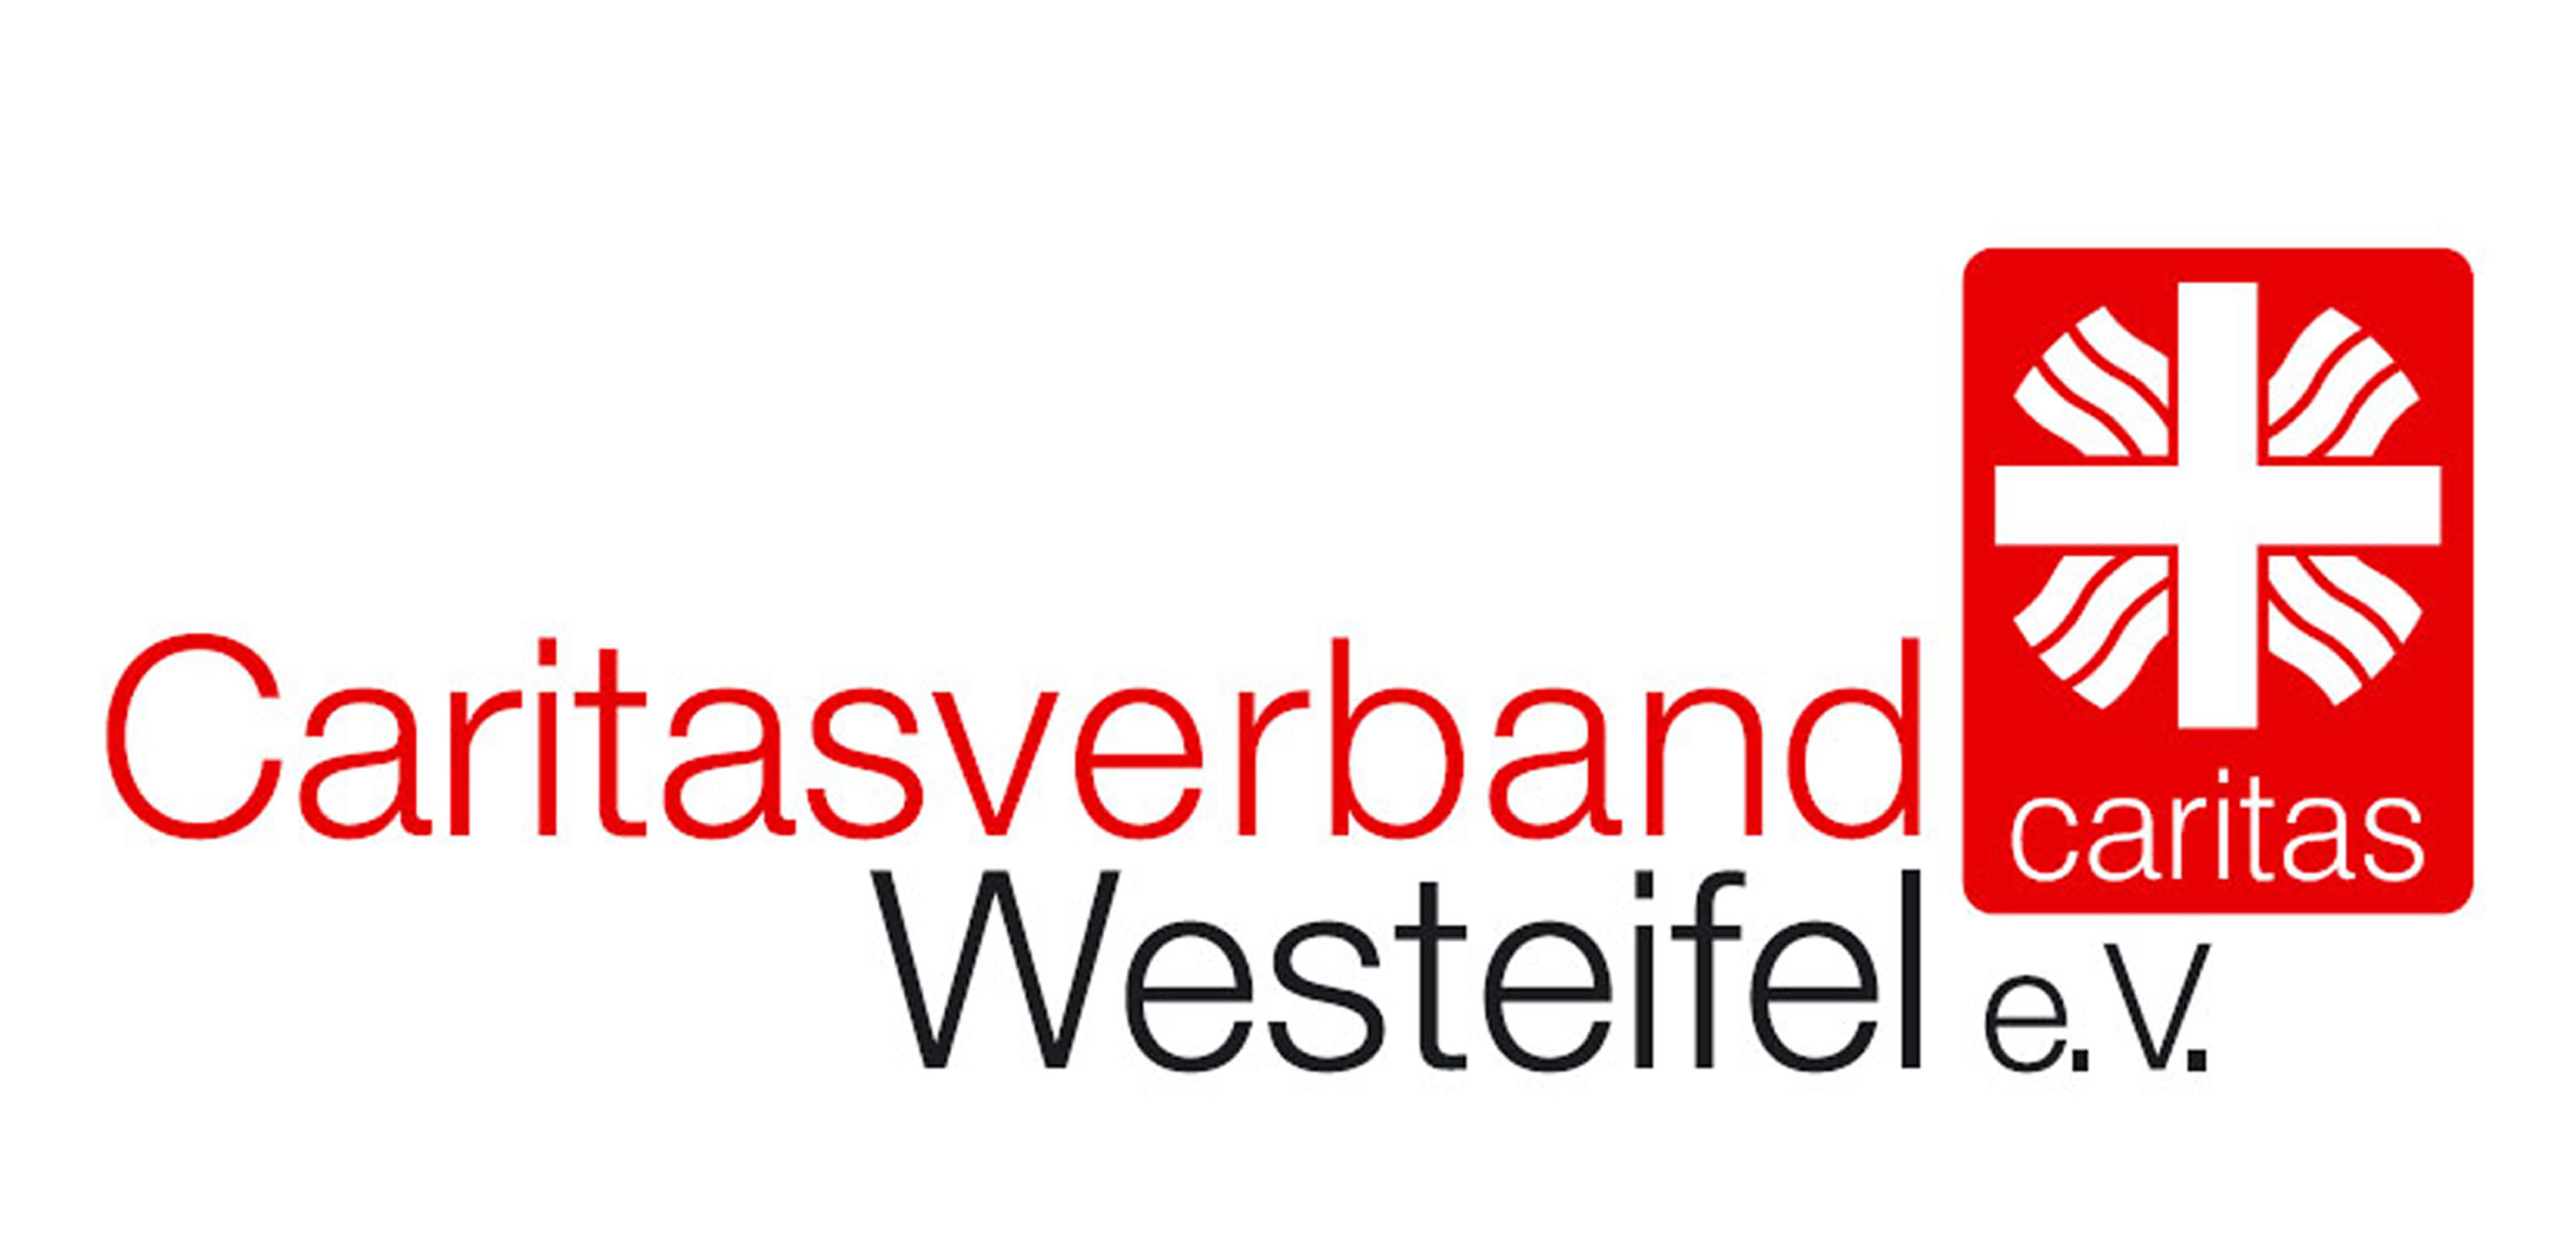 Caritasverband Westeifel e. V.